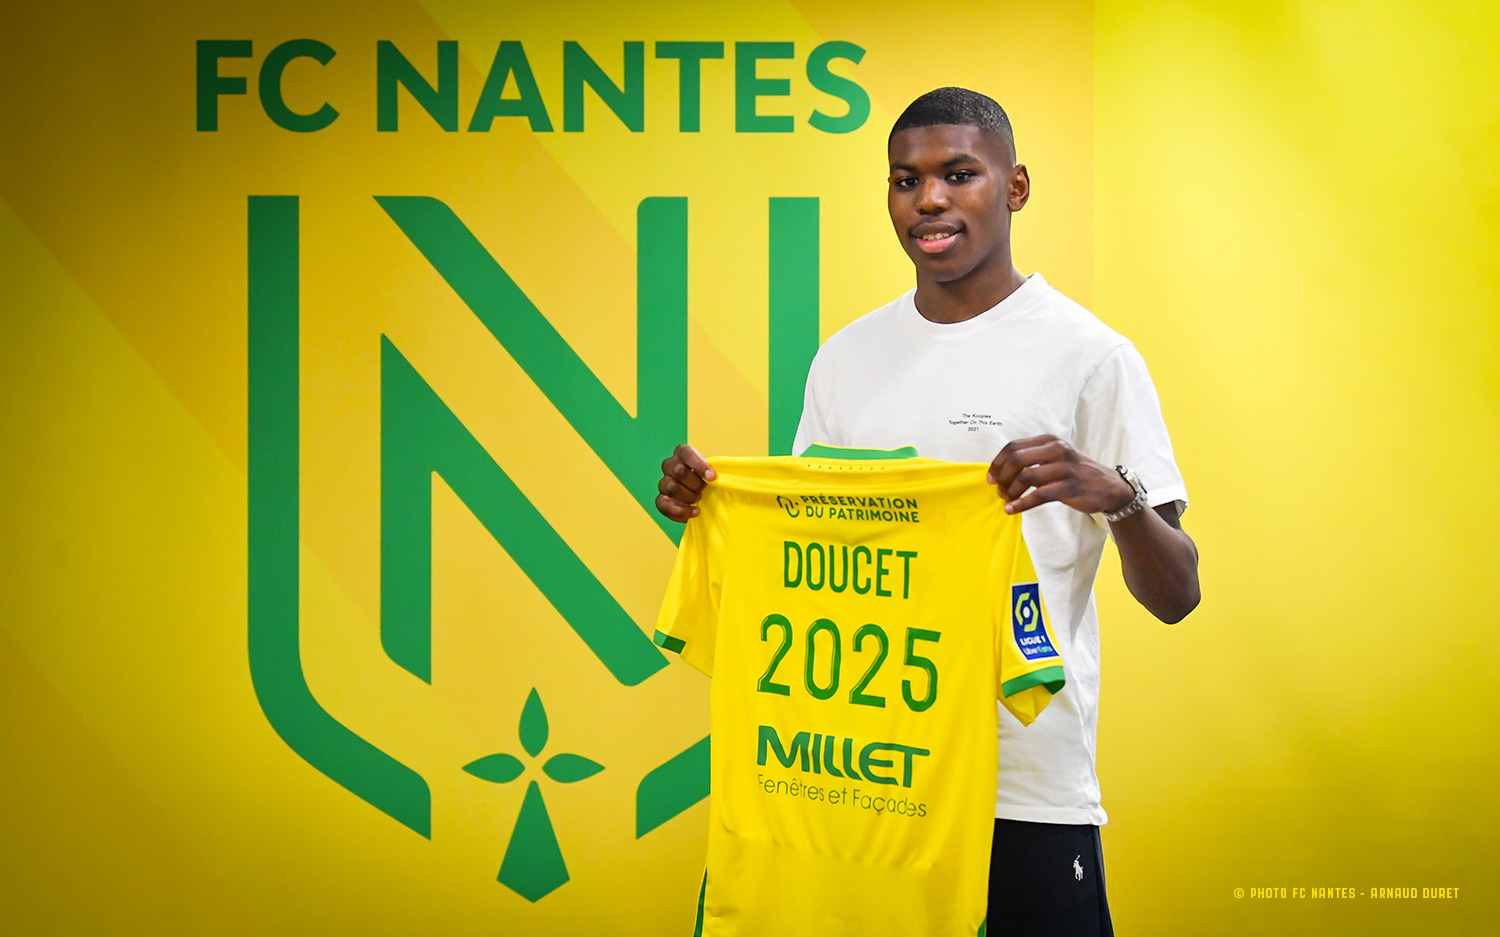 FC Nantes | Club - Premier contrat professionnel pour Lohann Doucet !